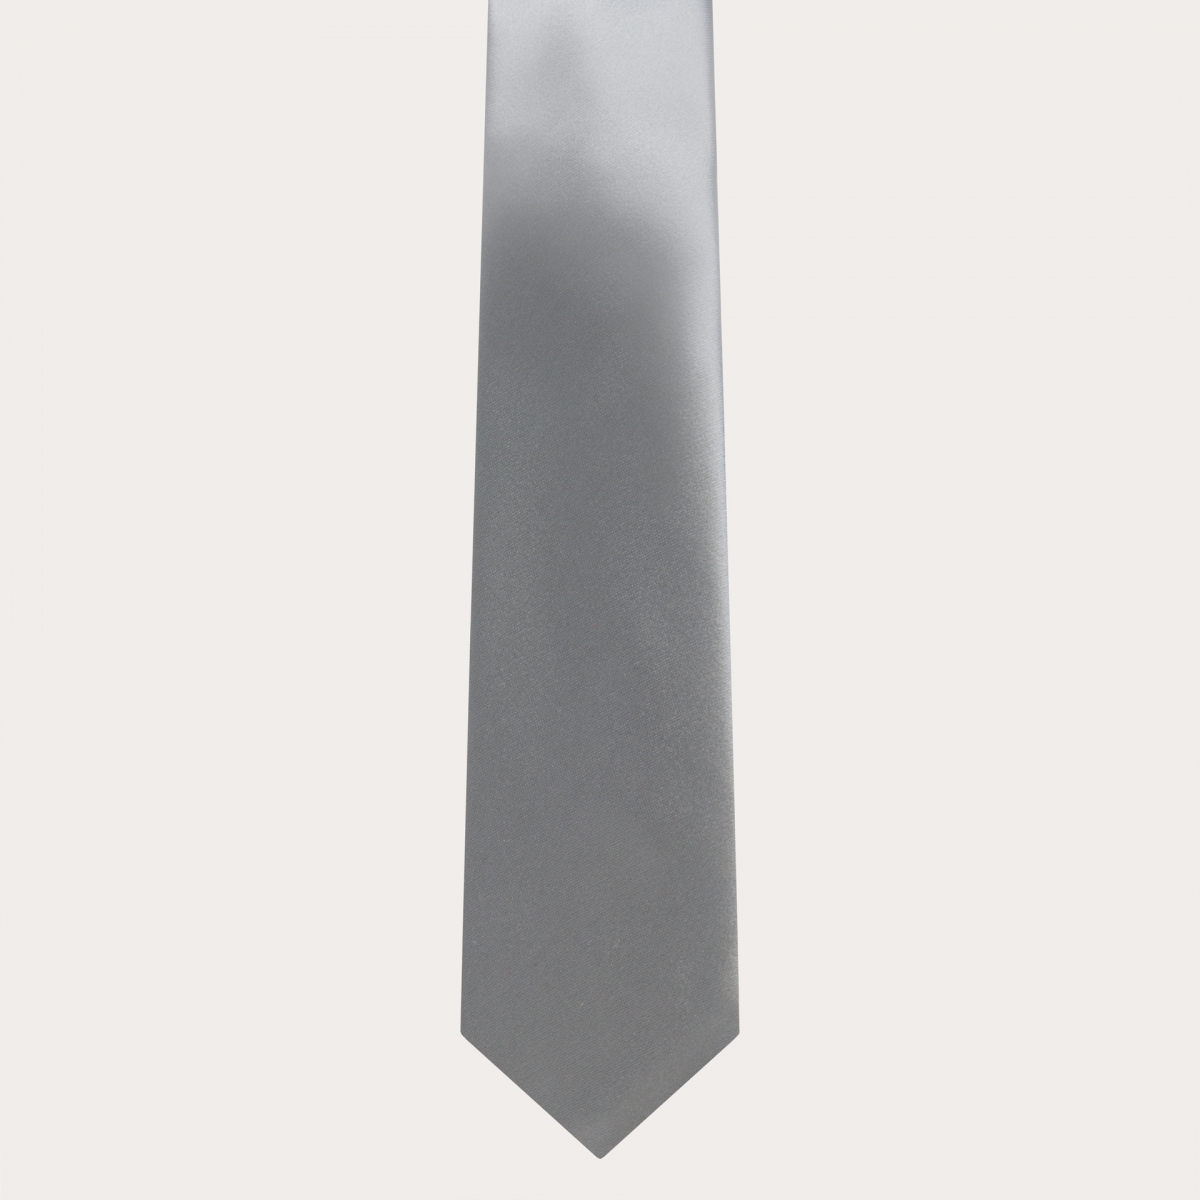 BRUCLE Corbata clásica en raso de seda, gris